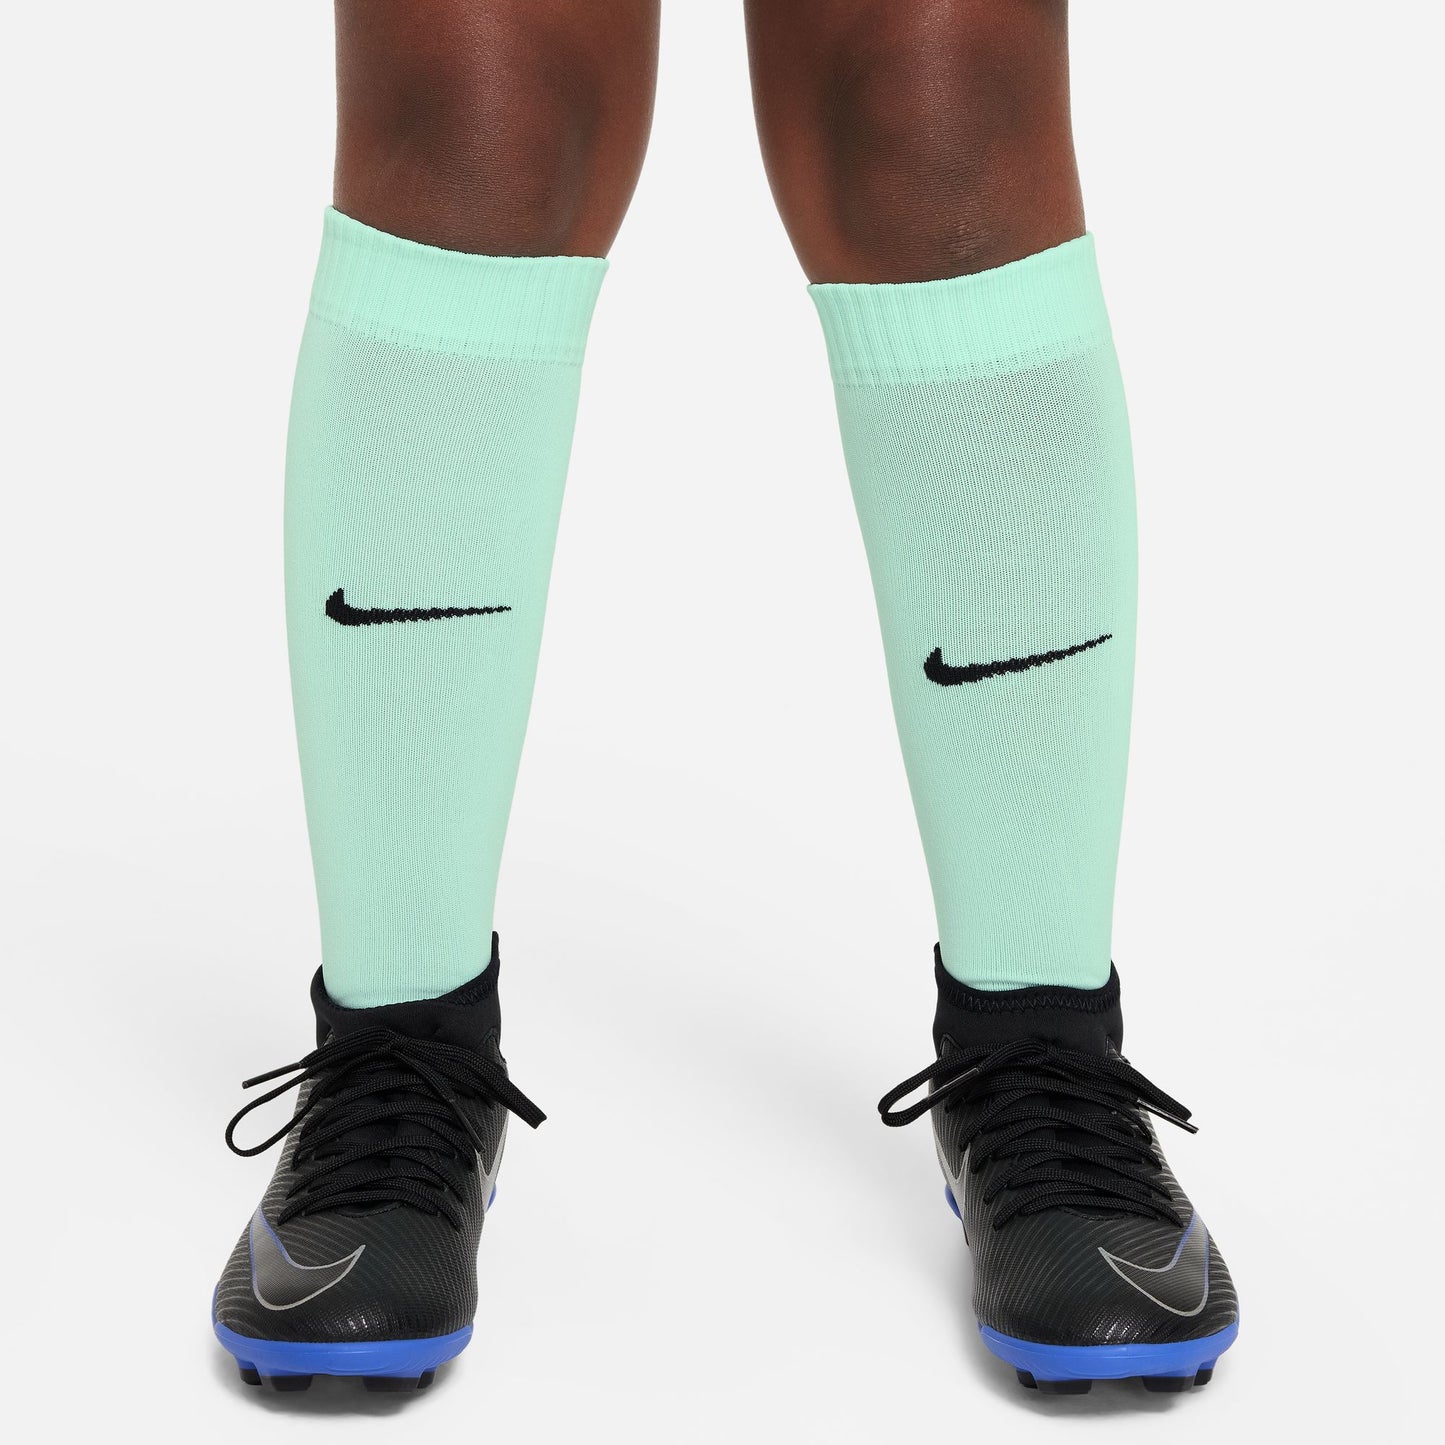 Chelsea Third 23/24 Nike Dri-FIT 3-delig tenue voor jongere kinderen